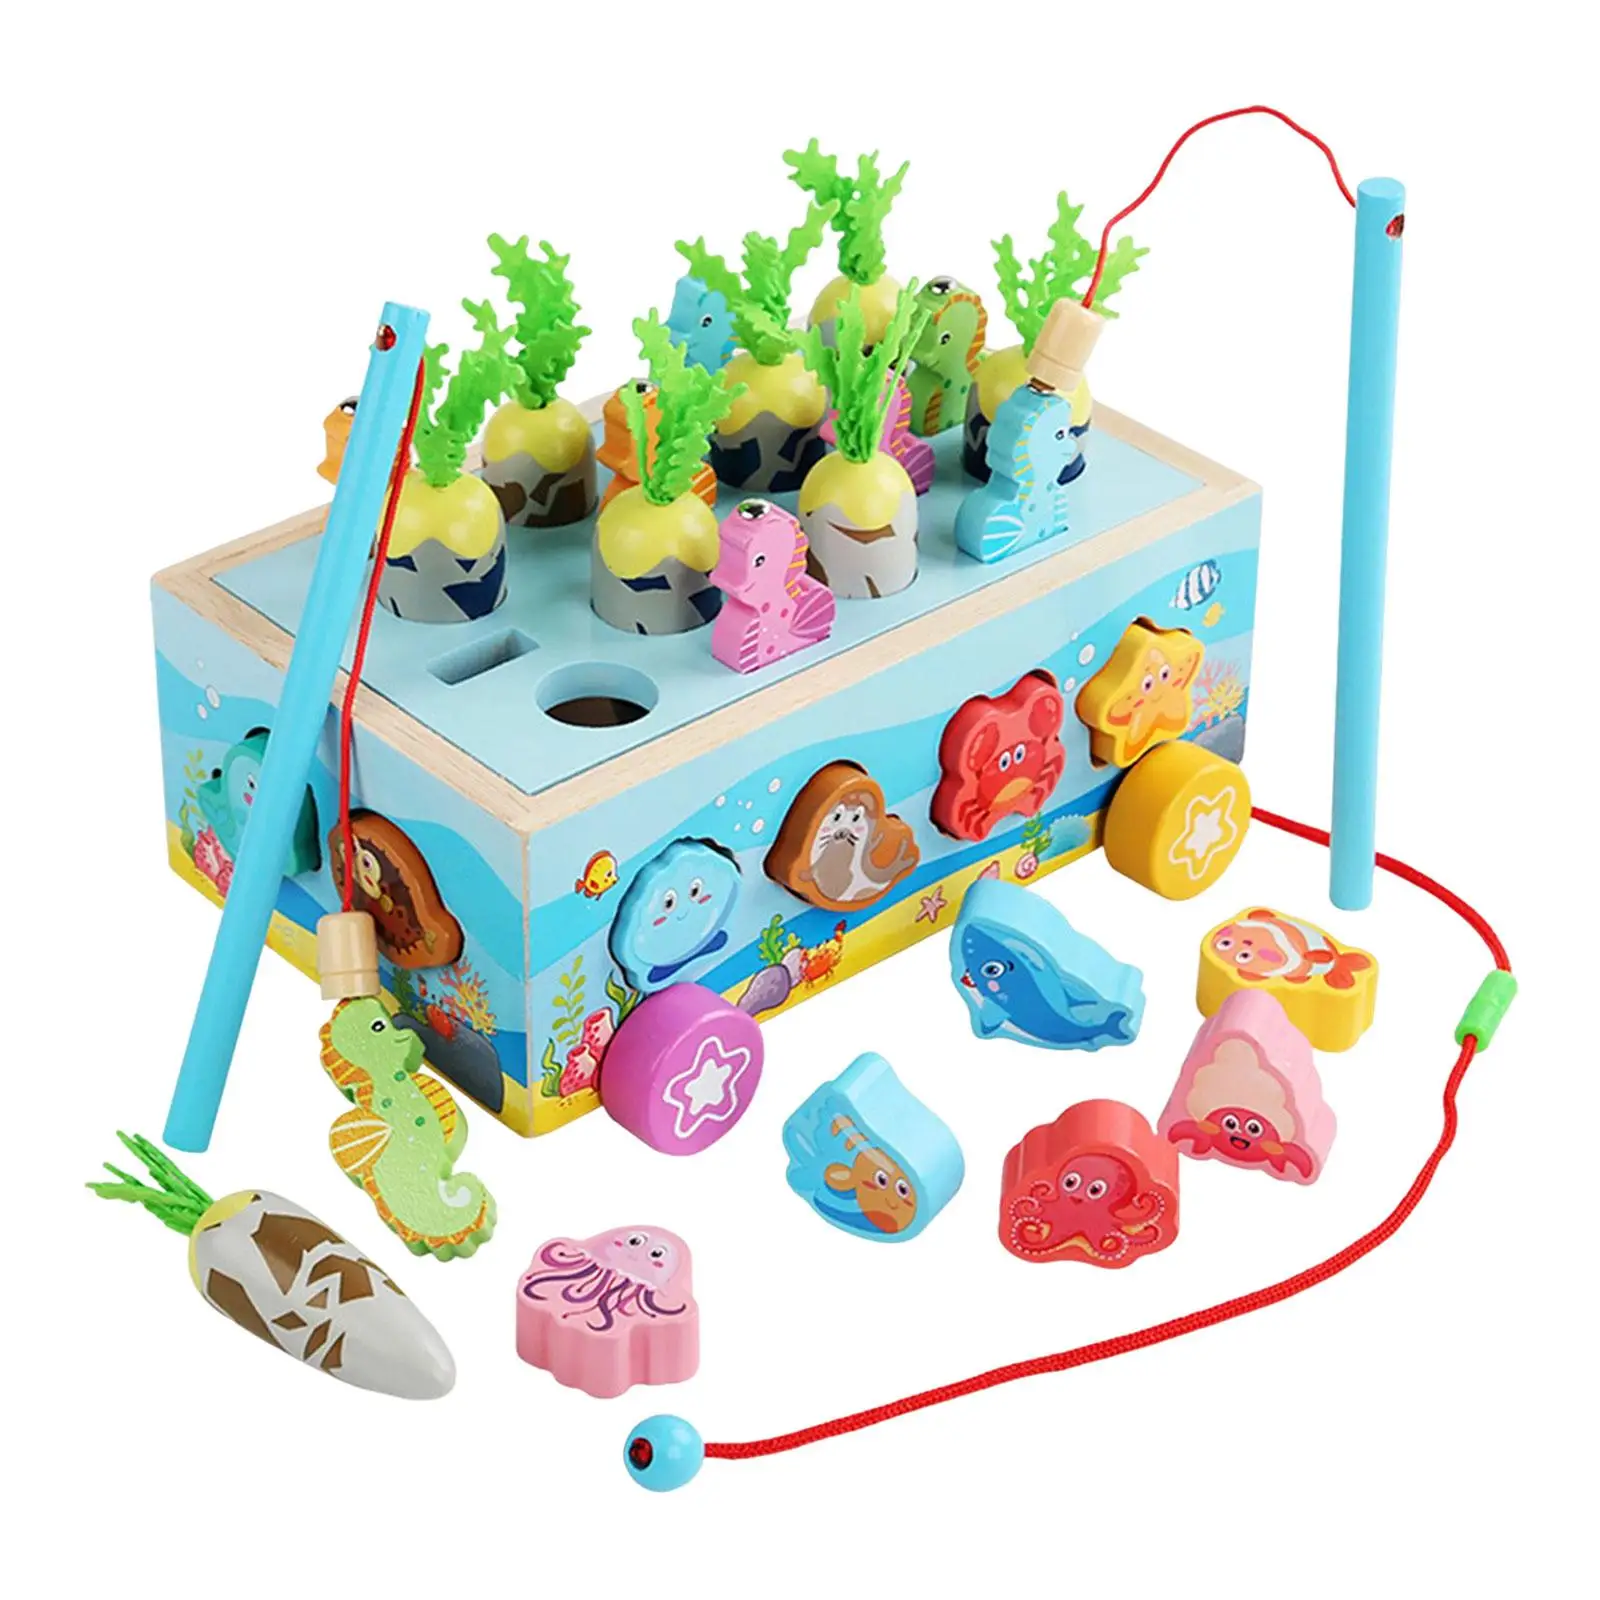 Fishing Game Car with Animal Blocks Fine Motor Skills Educational Toys Wooden Shape Sorter Toys for Toddler Kids Girls Boys Gift